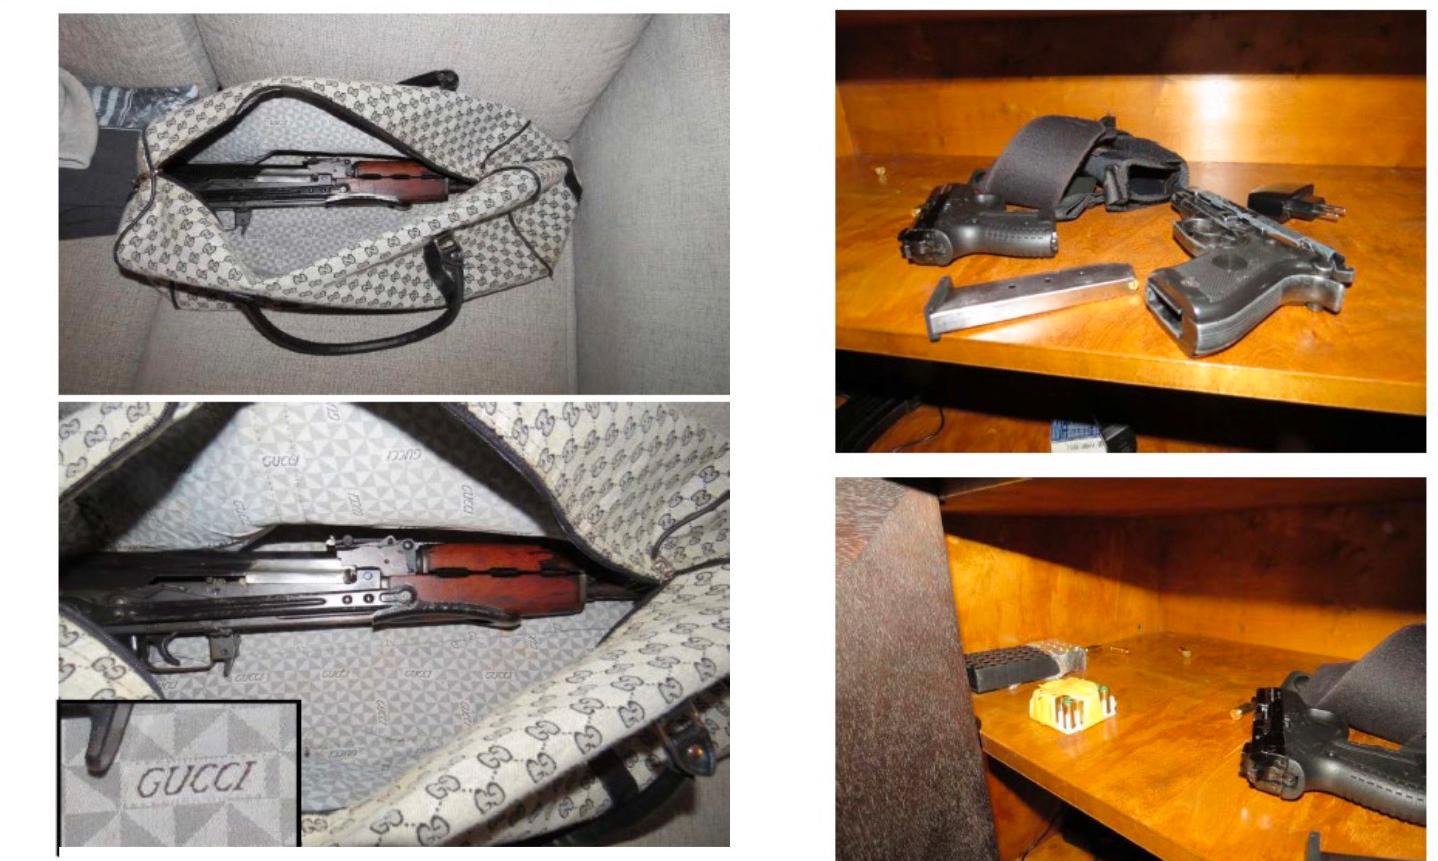 Automatvapen som förvarades i en väska hemma hos en av de åtalade. Skulle enligt åklagaren användas för ett nytt mord i Göteborg.